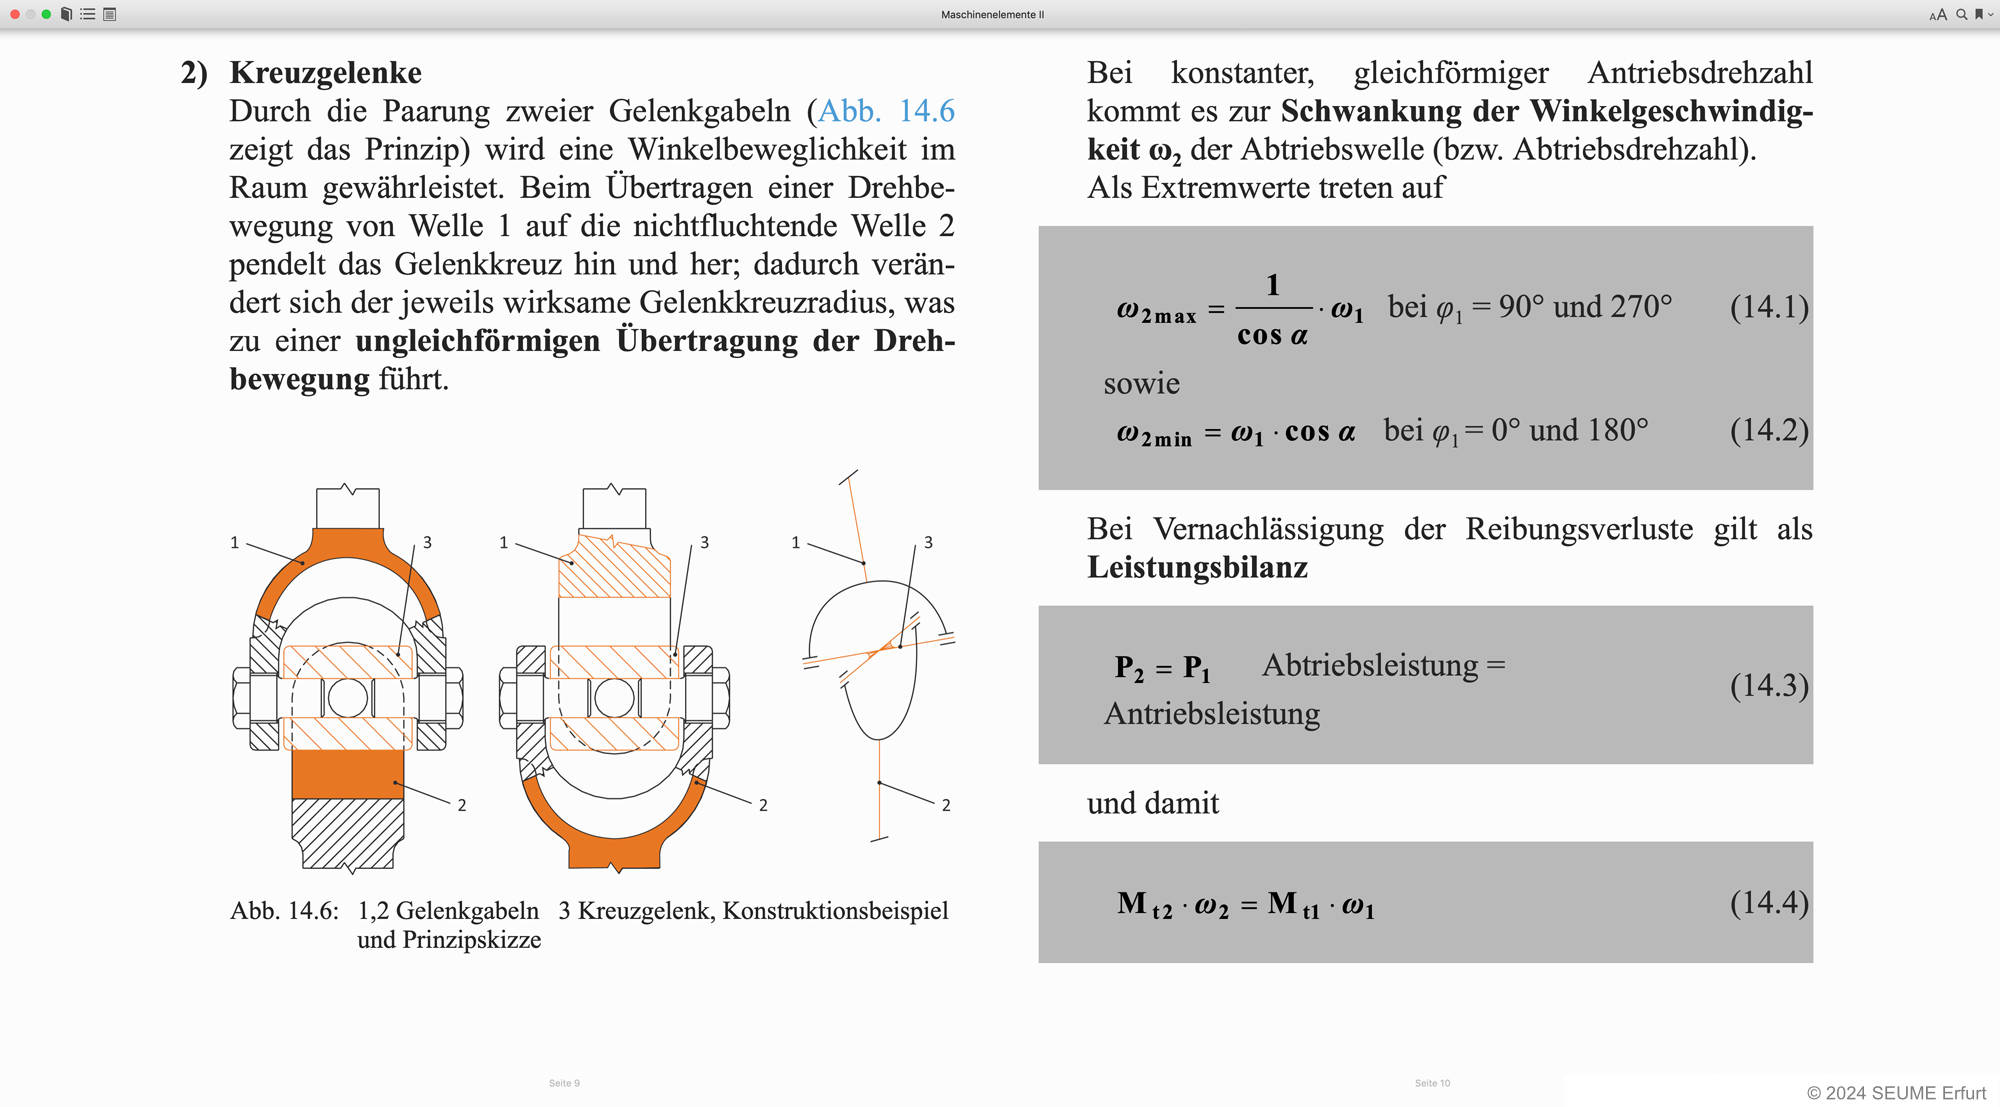 Bildschirmfoto eines E-Books mit Text, Formeln und einer technischen Zeischnung.